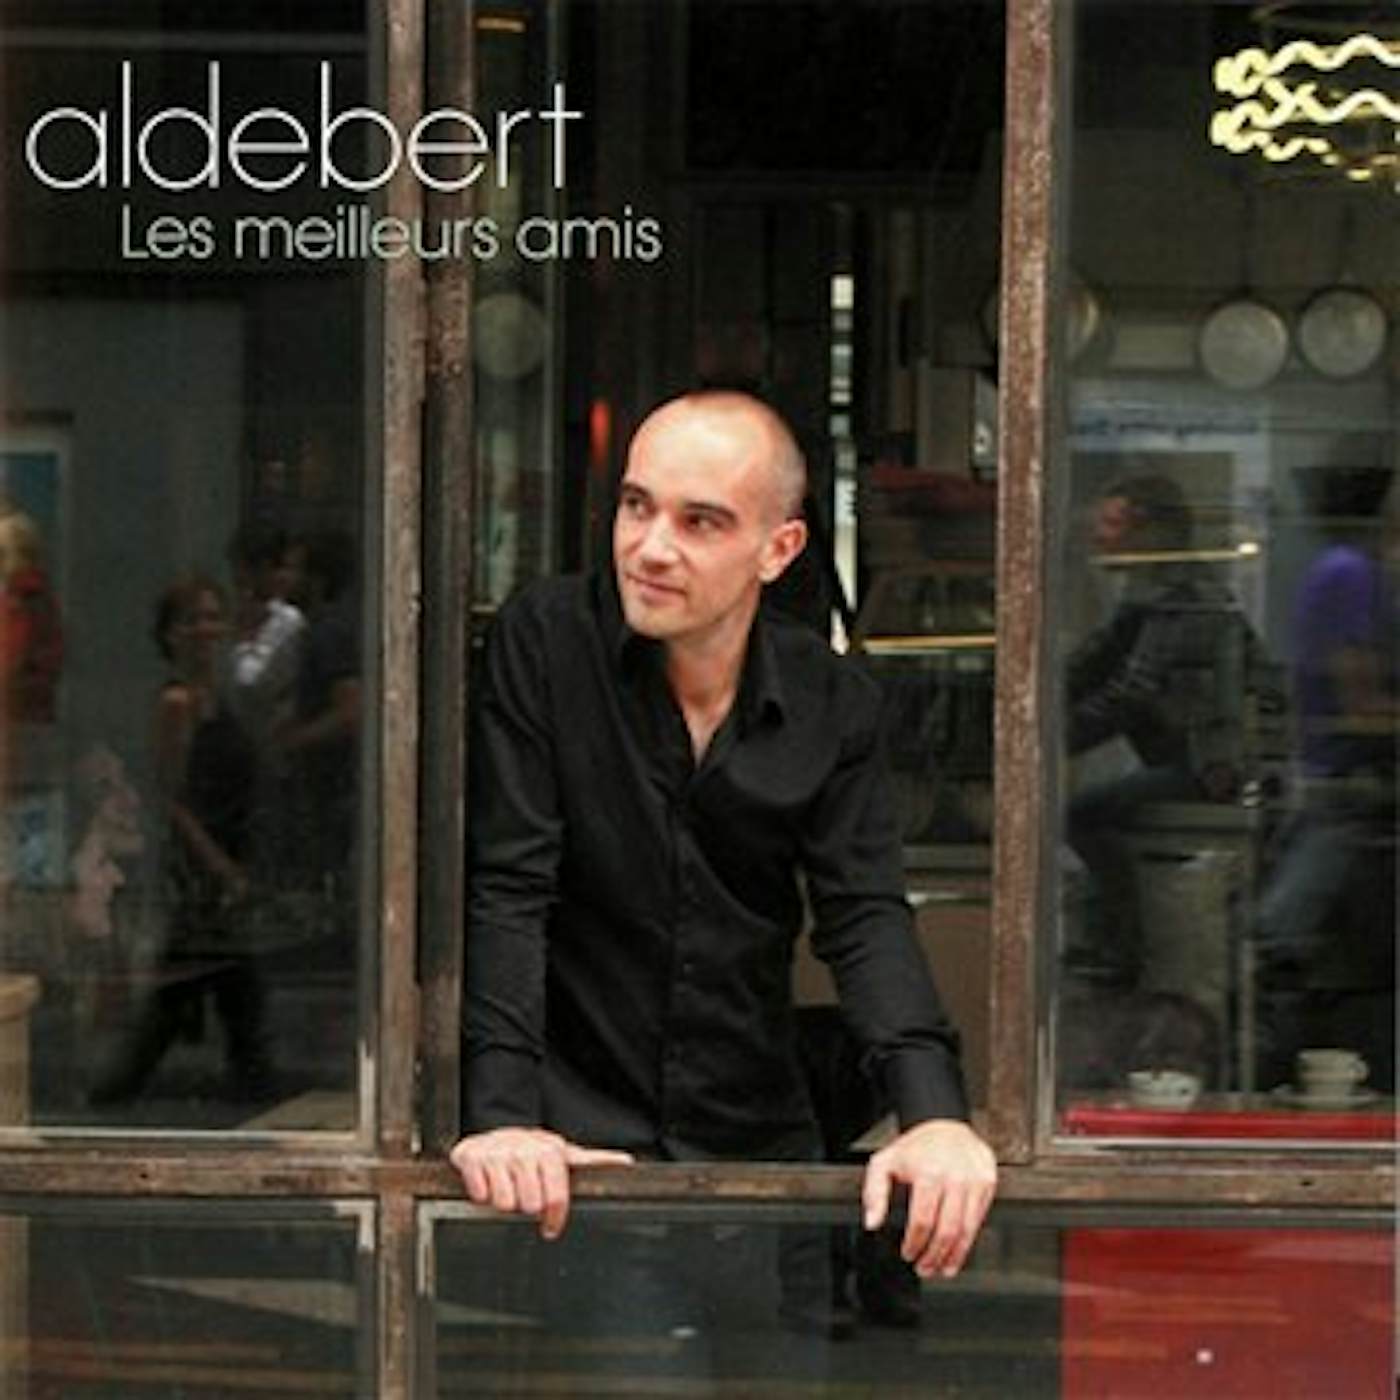 Aldebert LES MEILLEURS AMIS CD